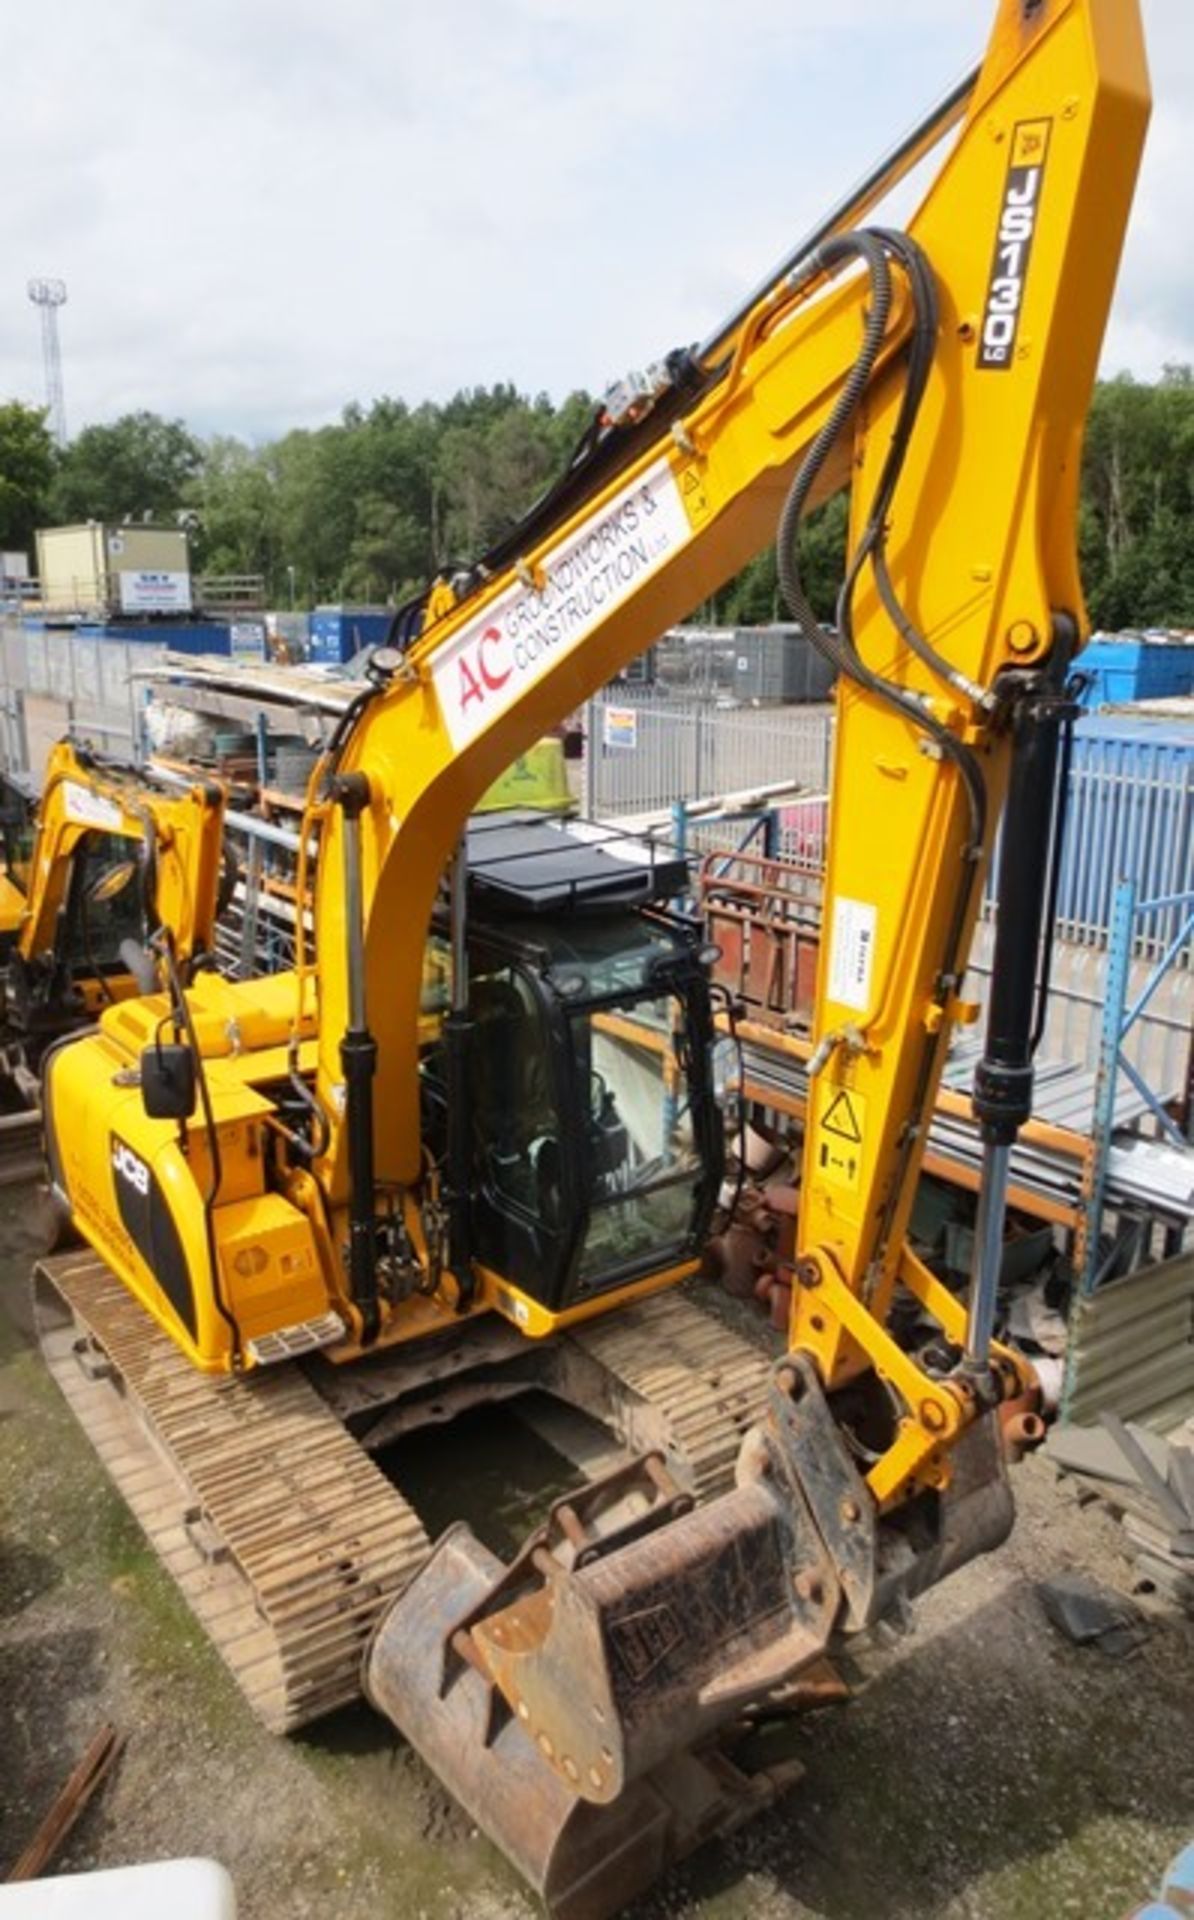 JCB JS130LC T4i IIIB steel tracked hydraulic excavator, product ID No: JCBJS13EVO2134453 (2014),